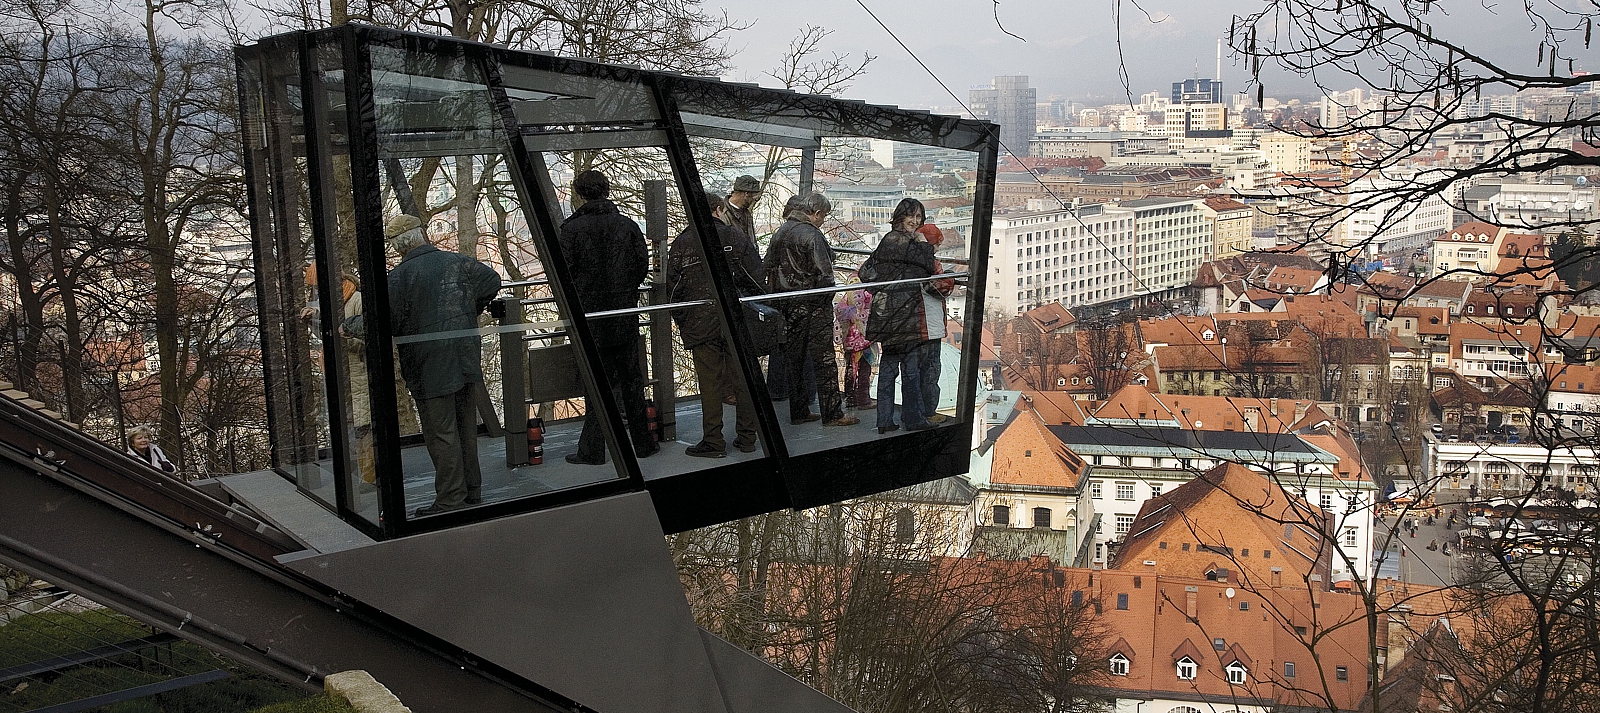 Ljubljana: The funicular